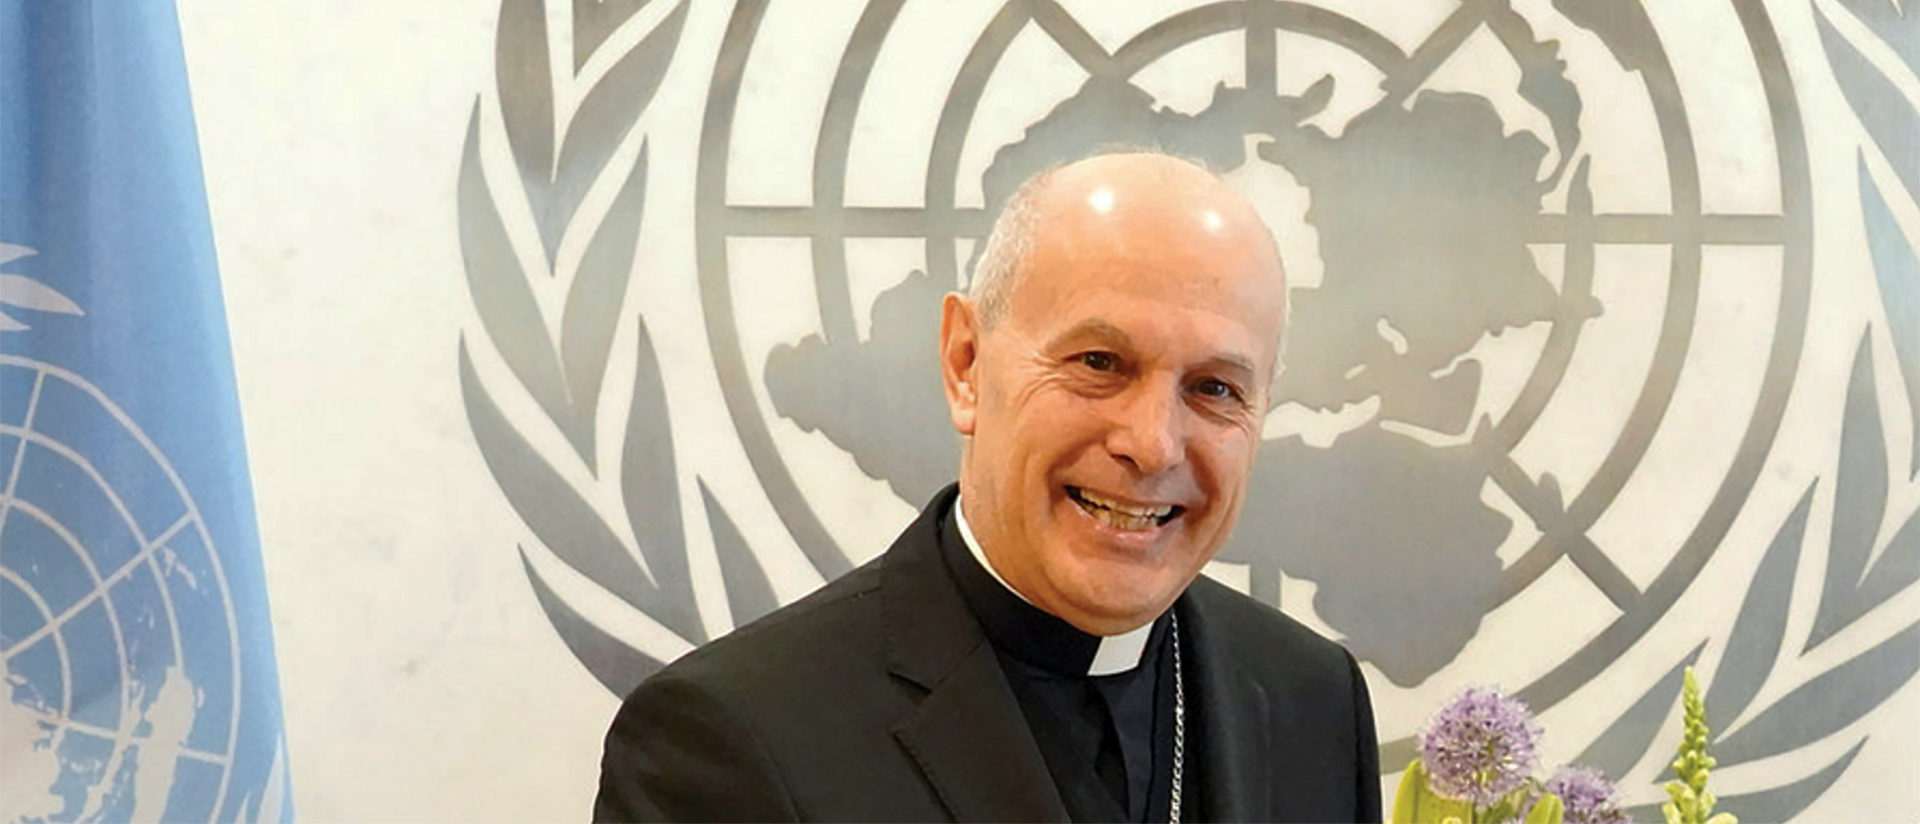 Mgr Gabriele Caccia, observateur permanent du Saint-Siège aupèrs des Nations unies | cny.org